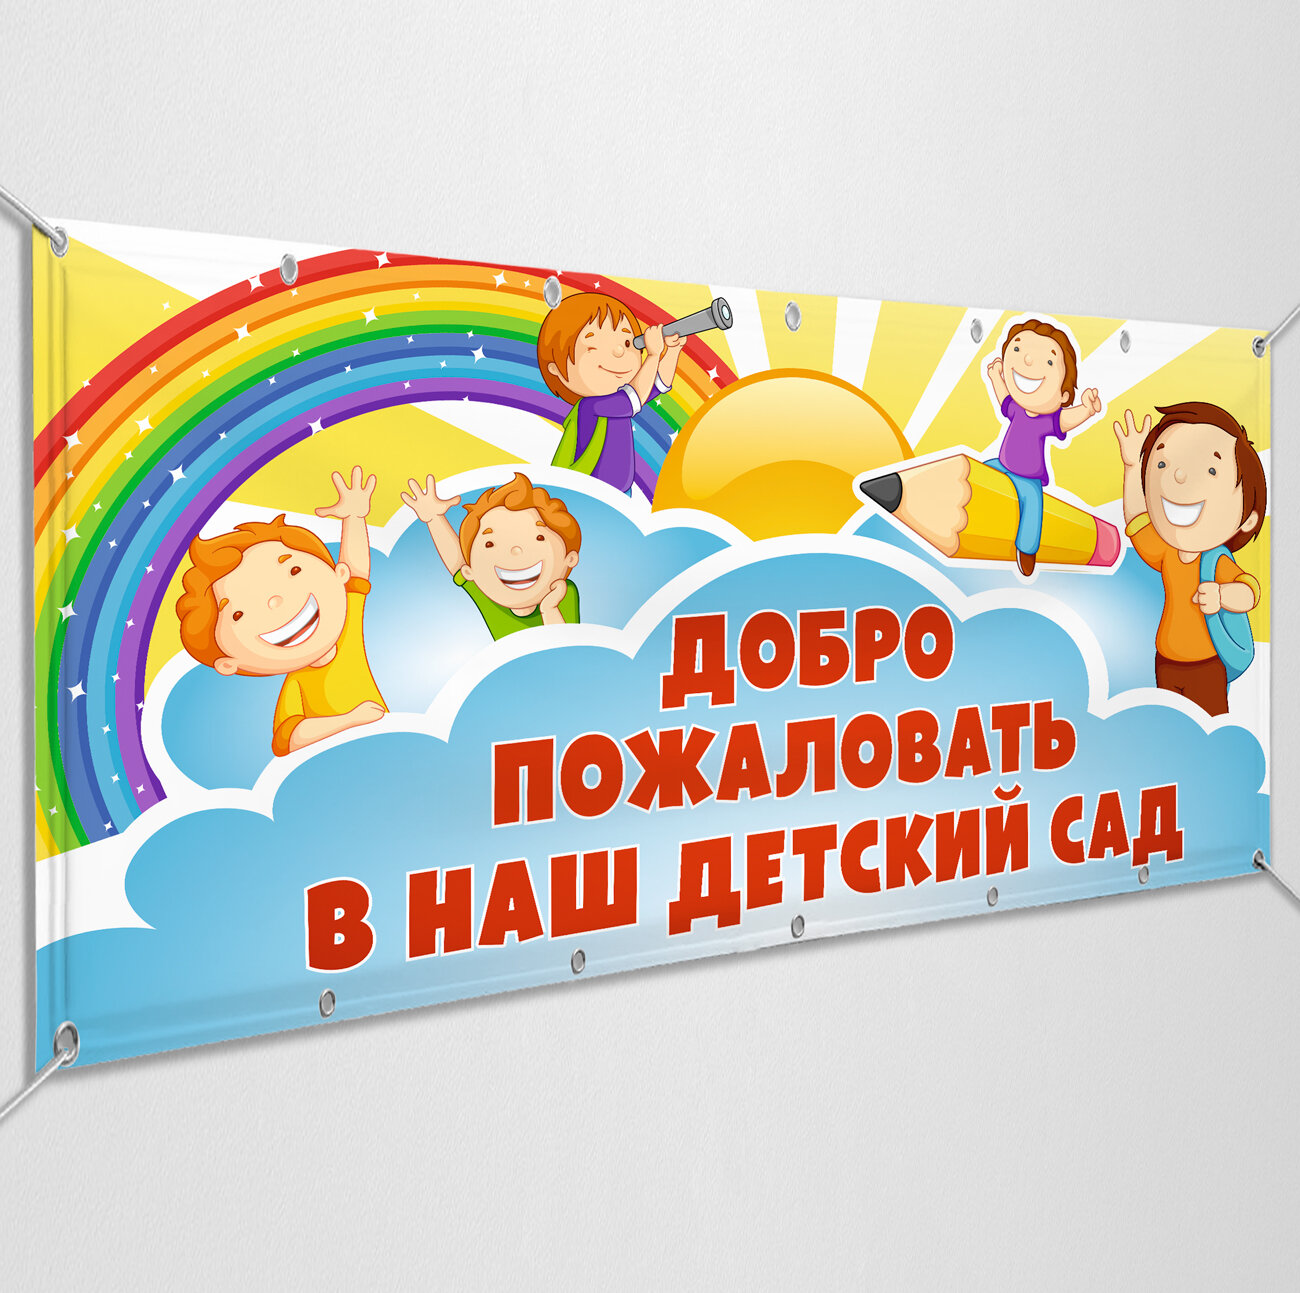 Баннер "Добро пожаловать в наш детский сад" / Вывеска, растяжка для детского садика / 1x0.5 м.